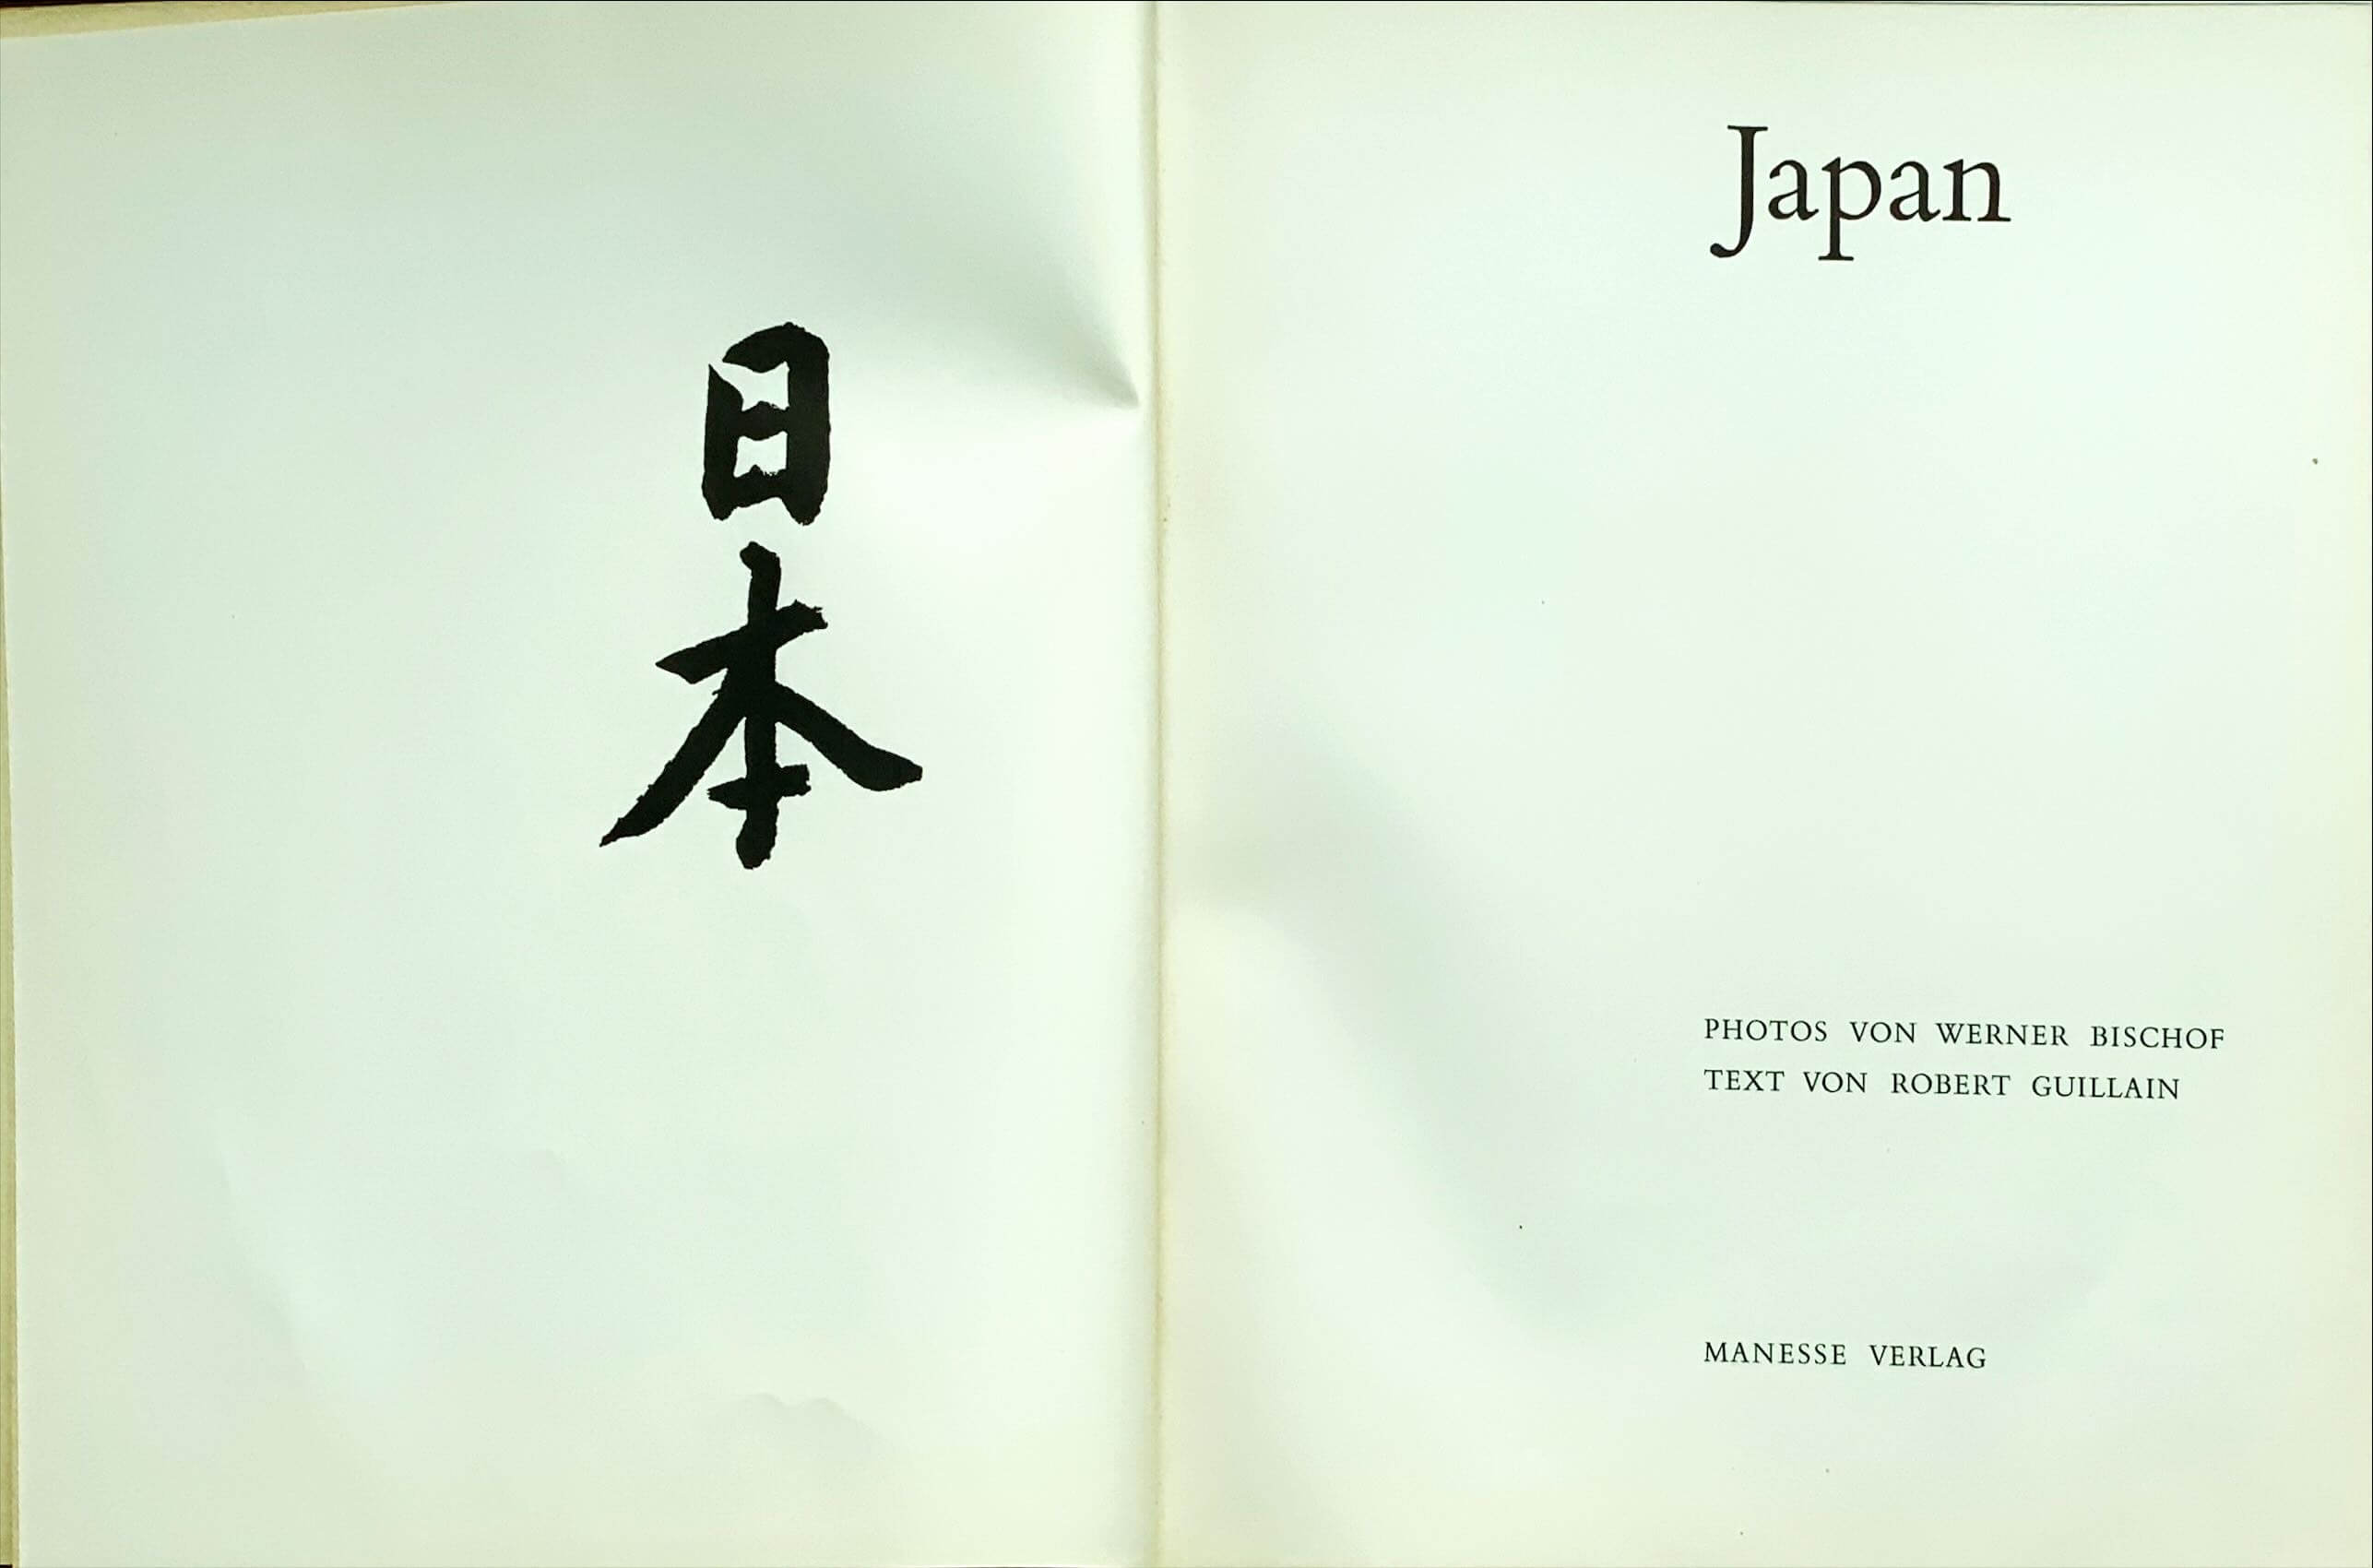 Manesse: Japan. PHOTOS VON WERNER BISCHOF. TEXT VON ROBERT GUILLAIN.